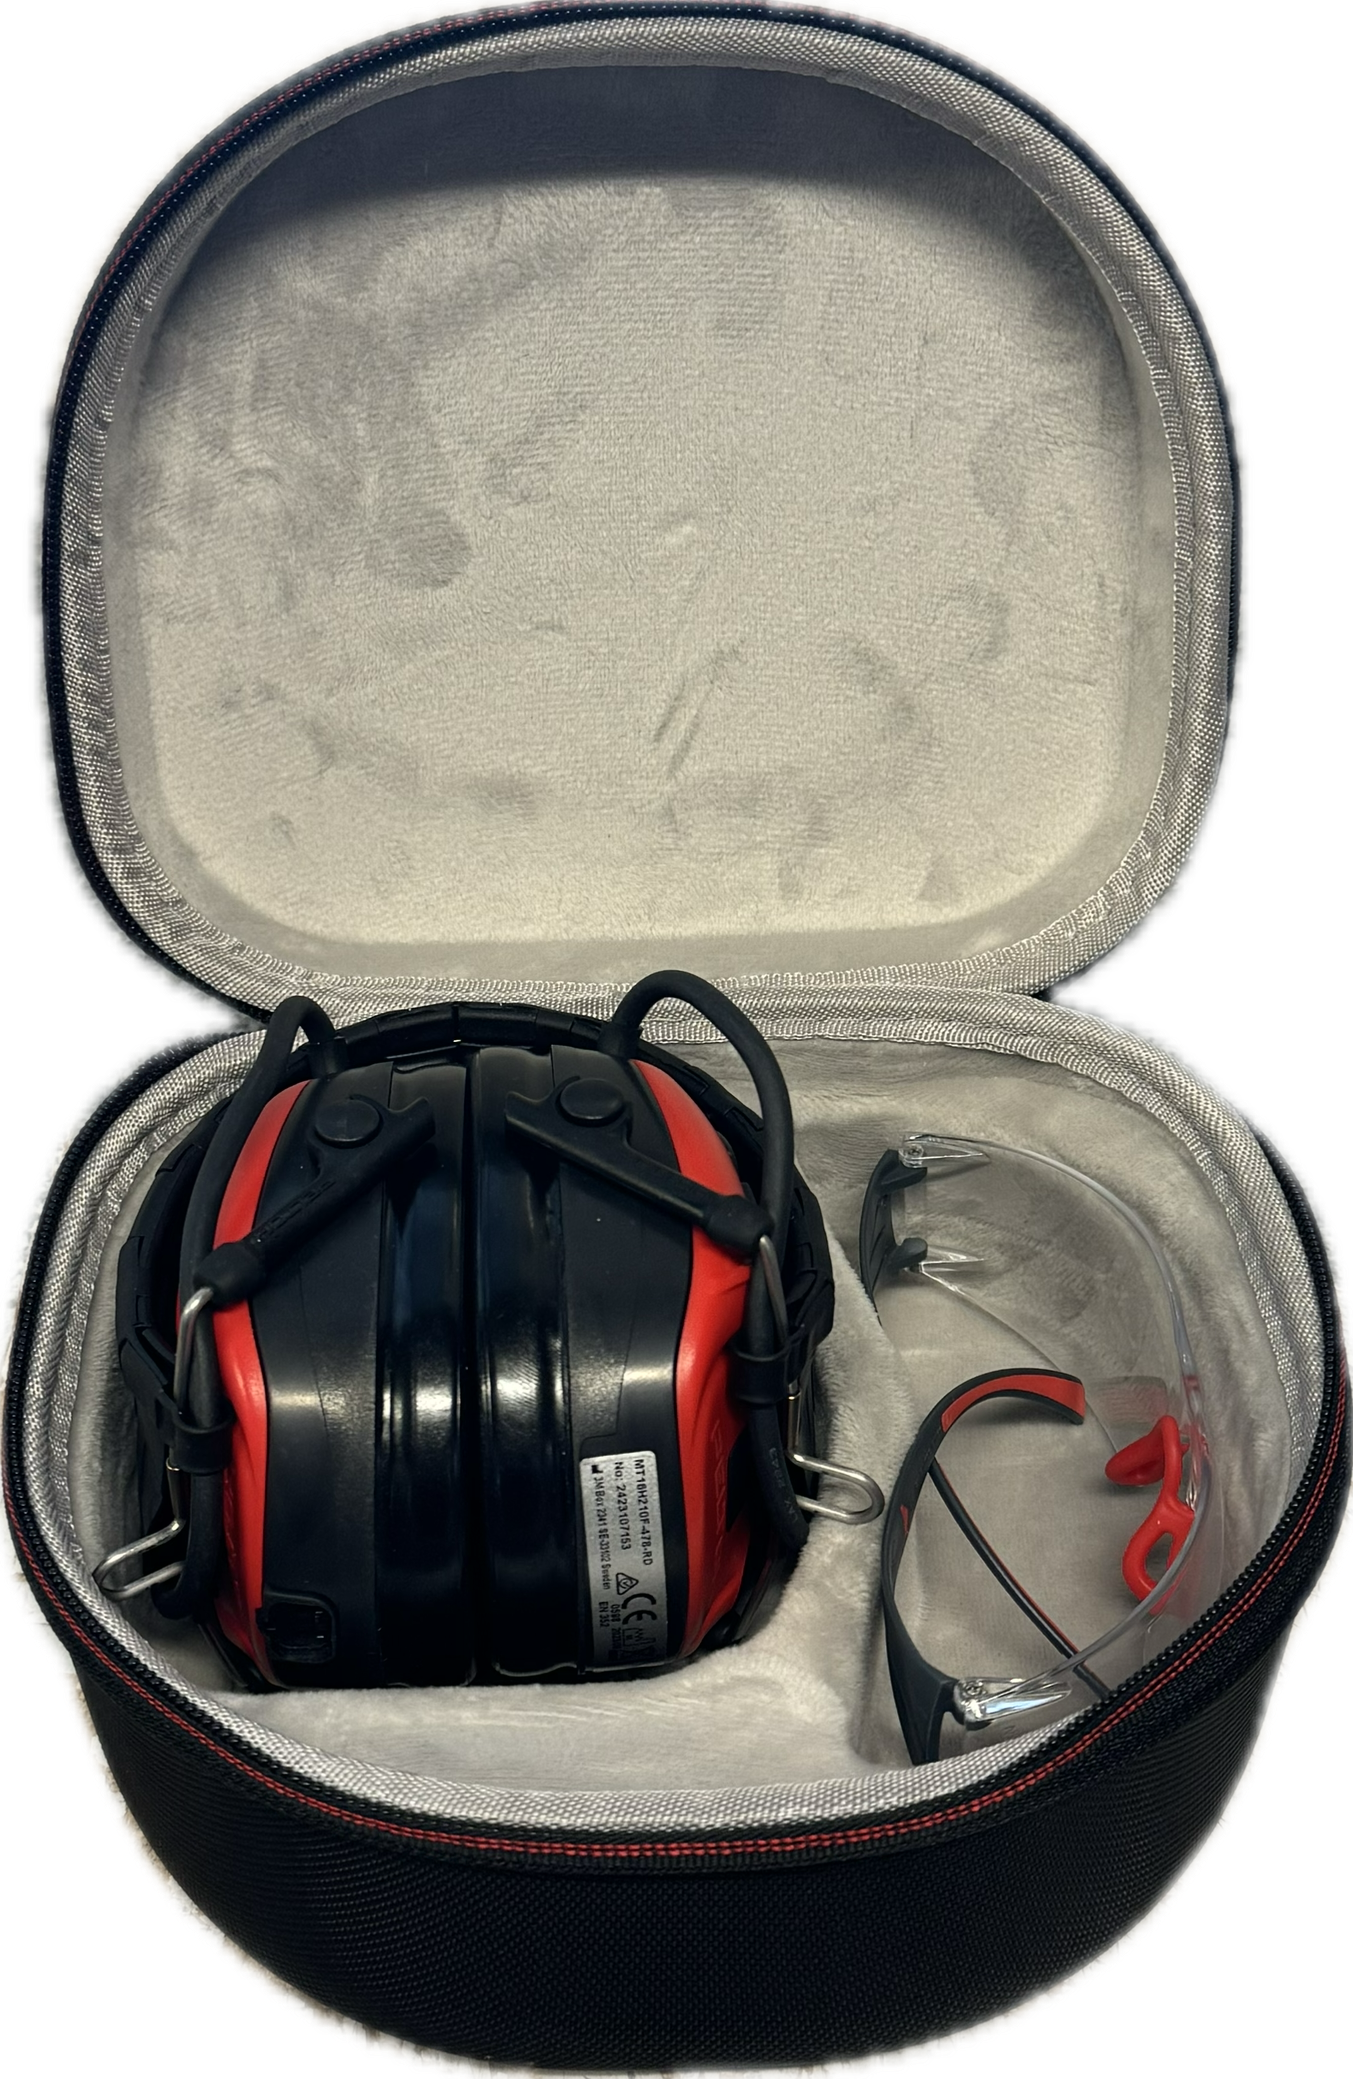 SKS Aufbewahrungsbox für Gehörschutz 3M Peltor SportTac / 3M Bulls Eye I mit Kopfbügel faltbar und Schutzbrille